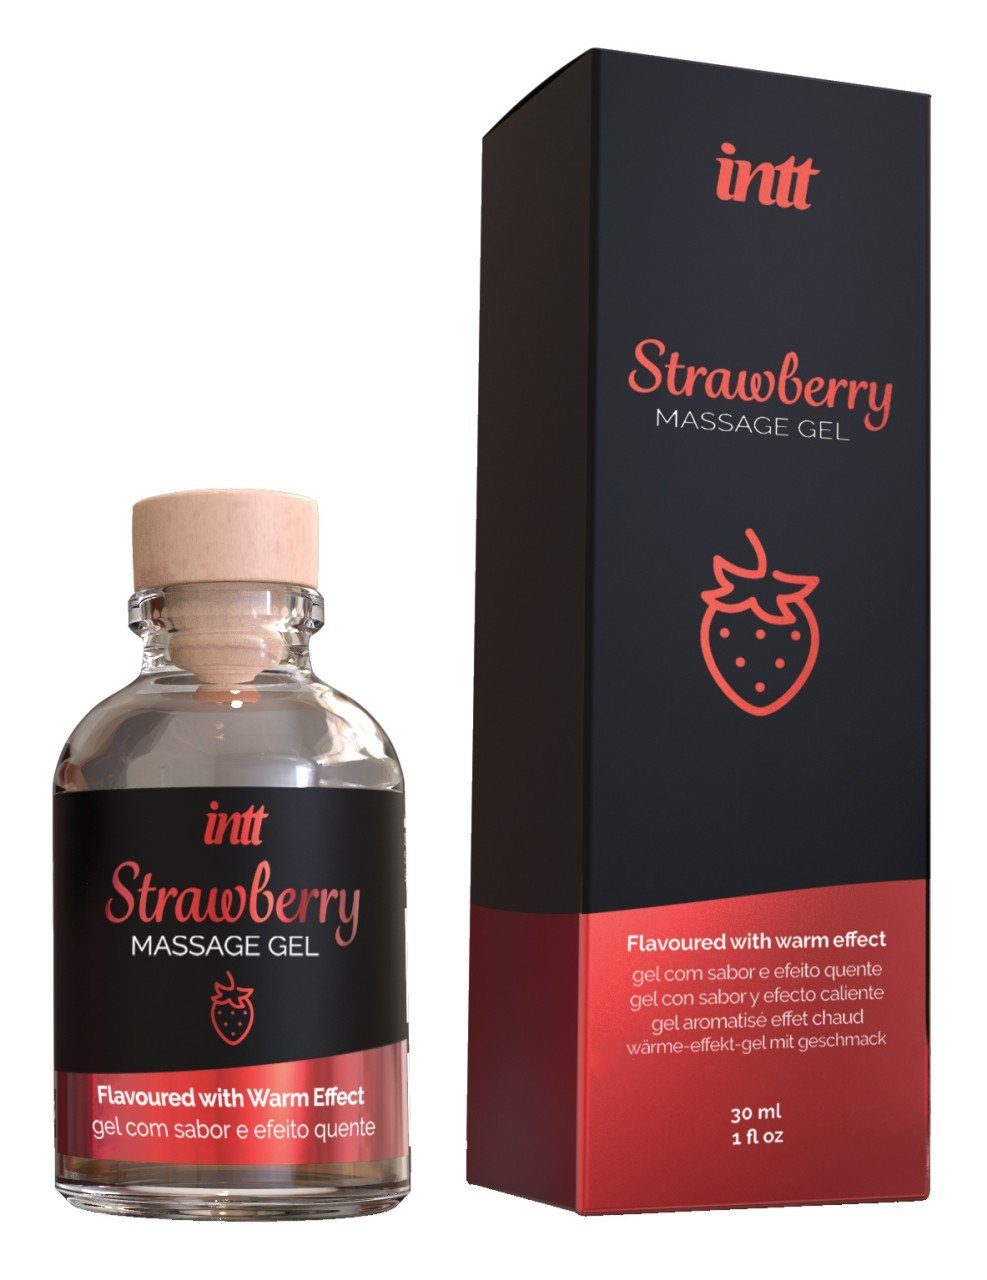 Massagegel Strawberry und INTT ml Massage Gel 30ml 30 - Gleit- intt